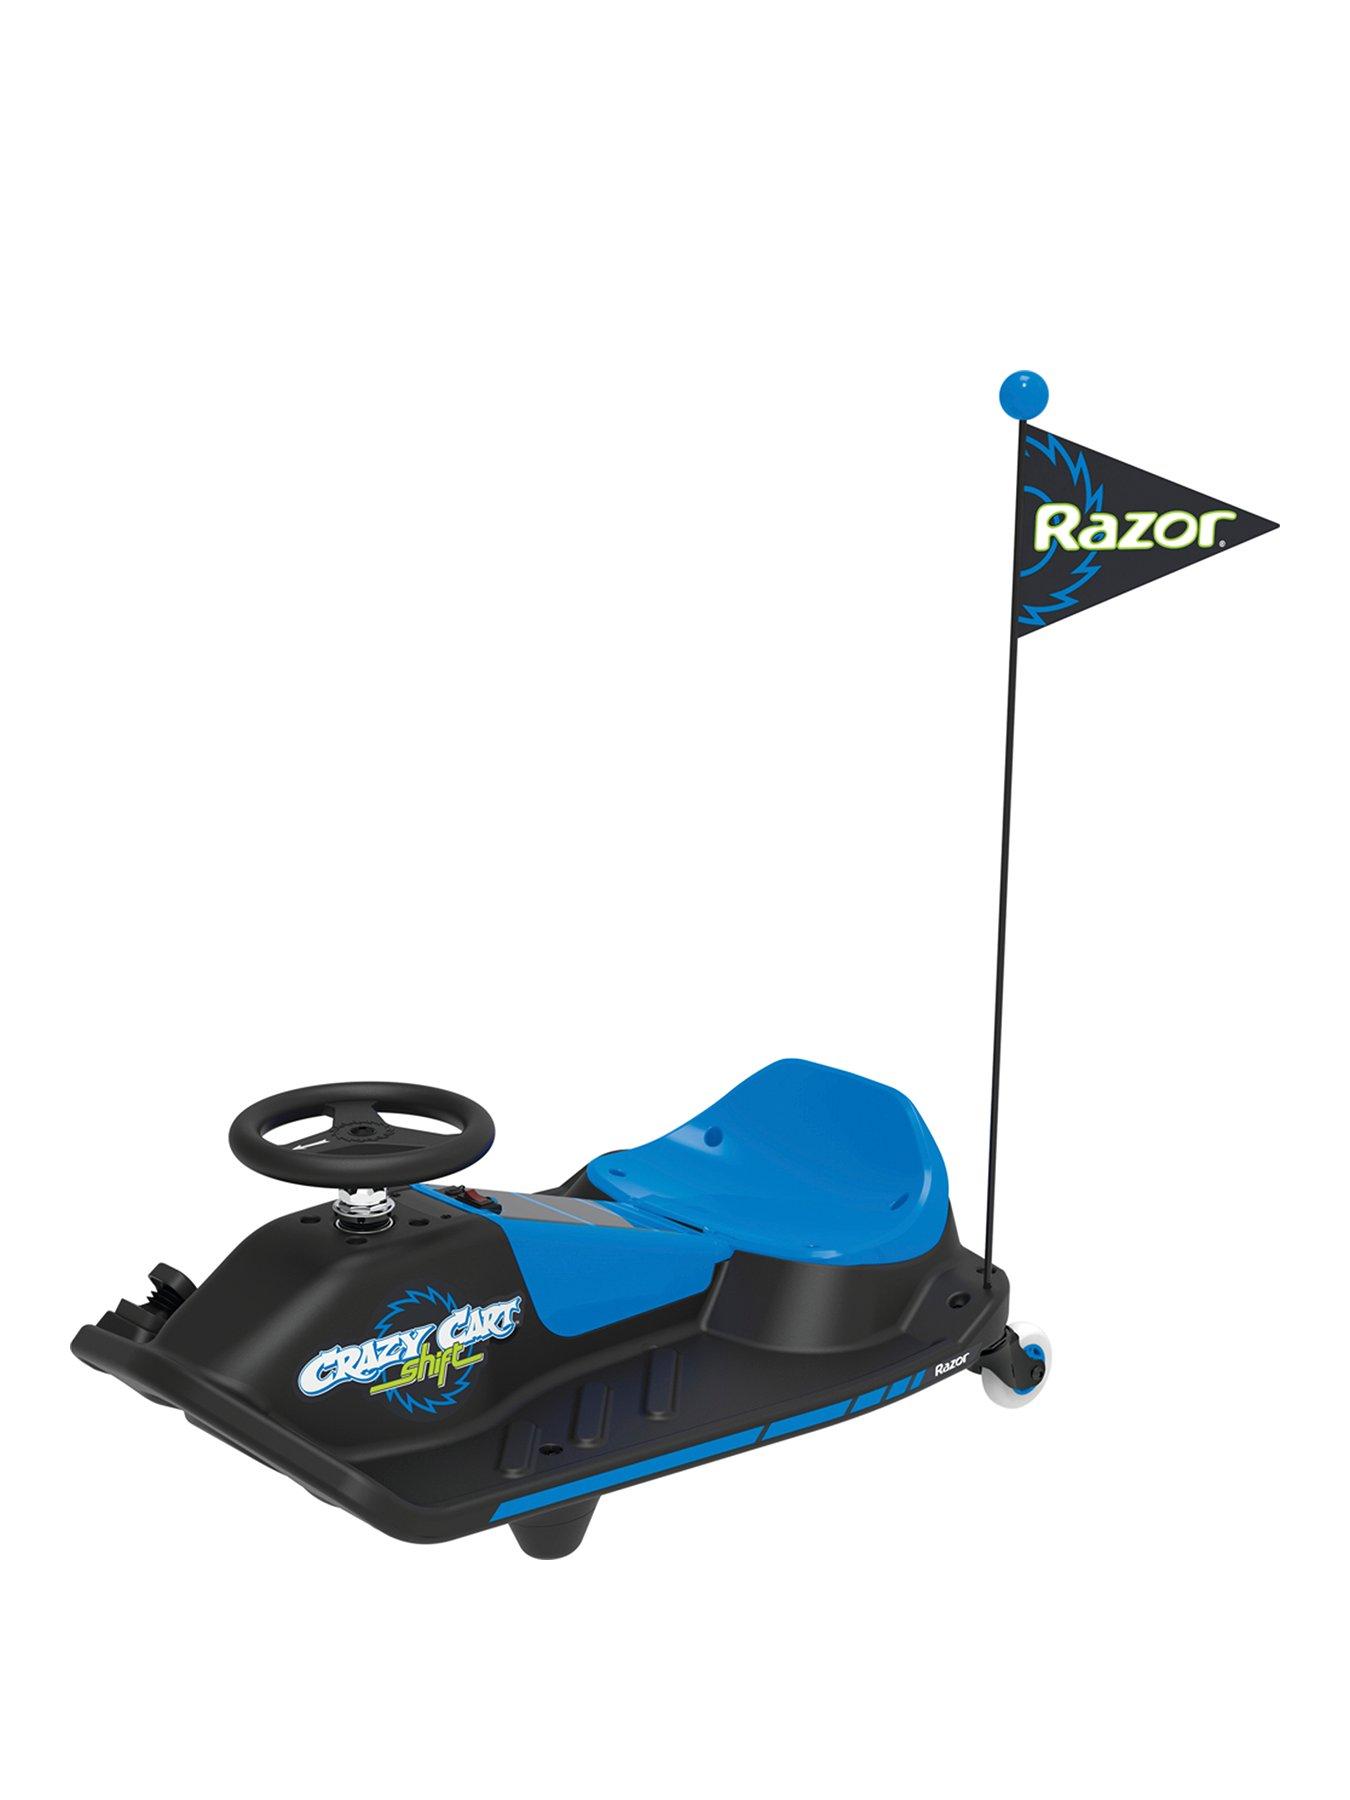 Razor Crazy Cart Shift - Electric Go Kart For Kids 6+ - Blue